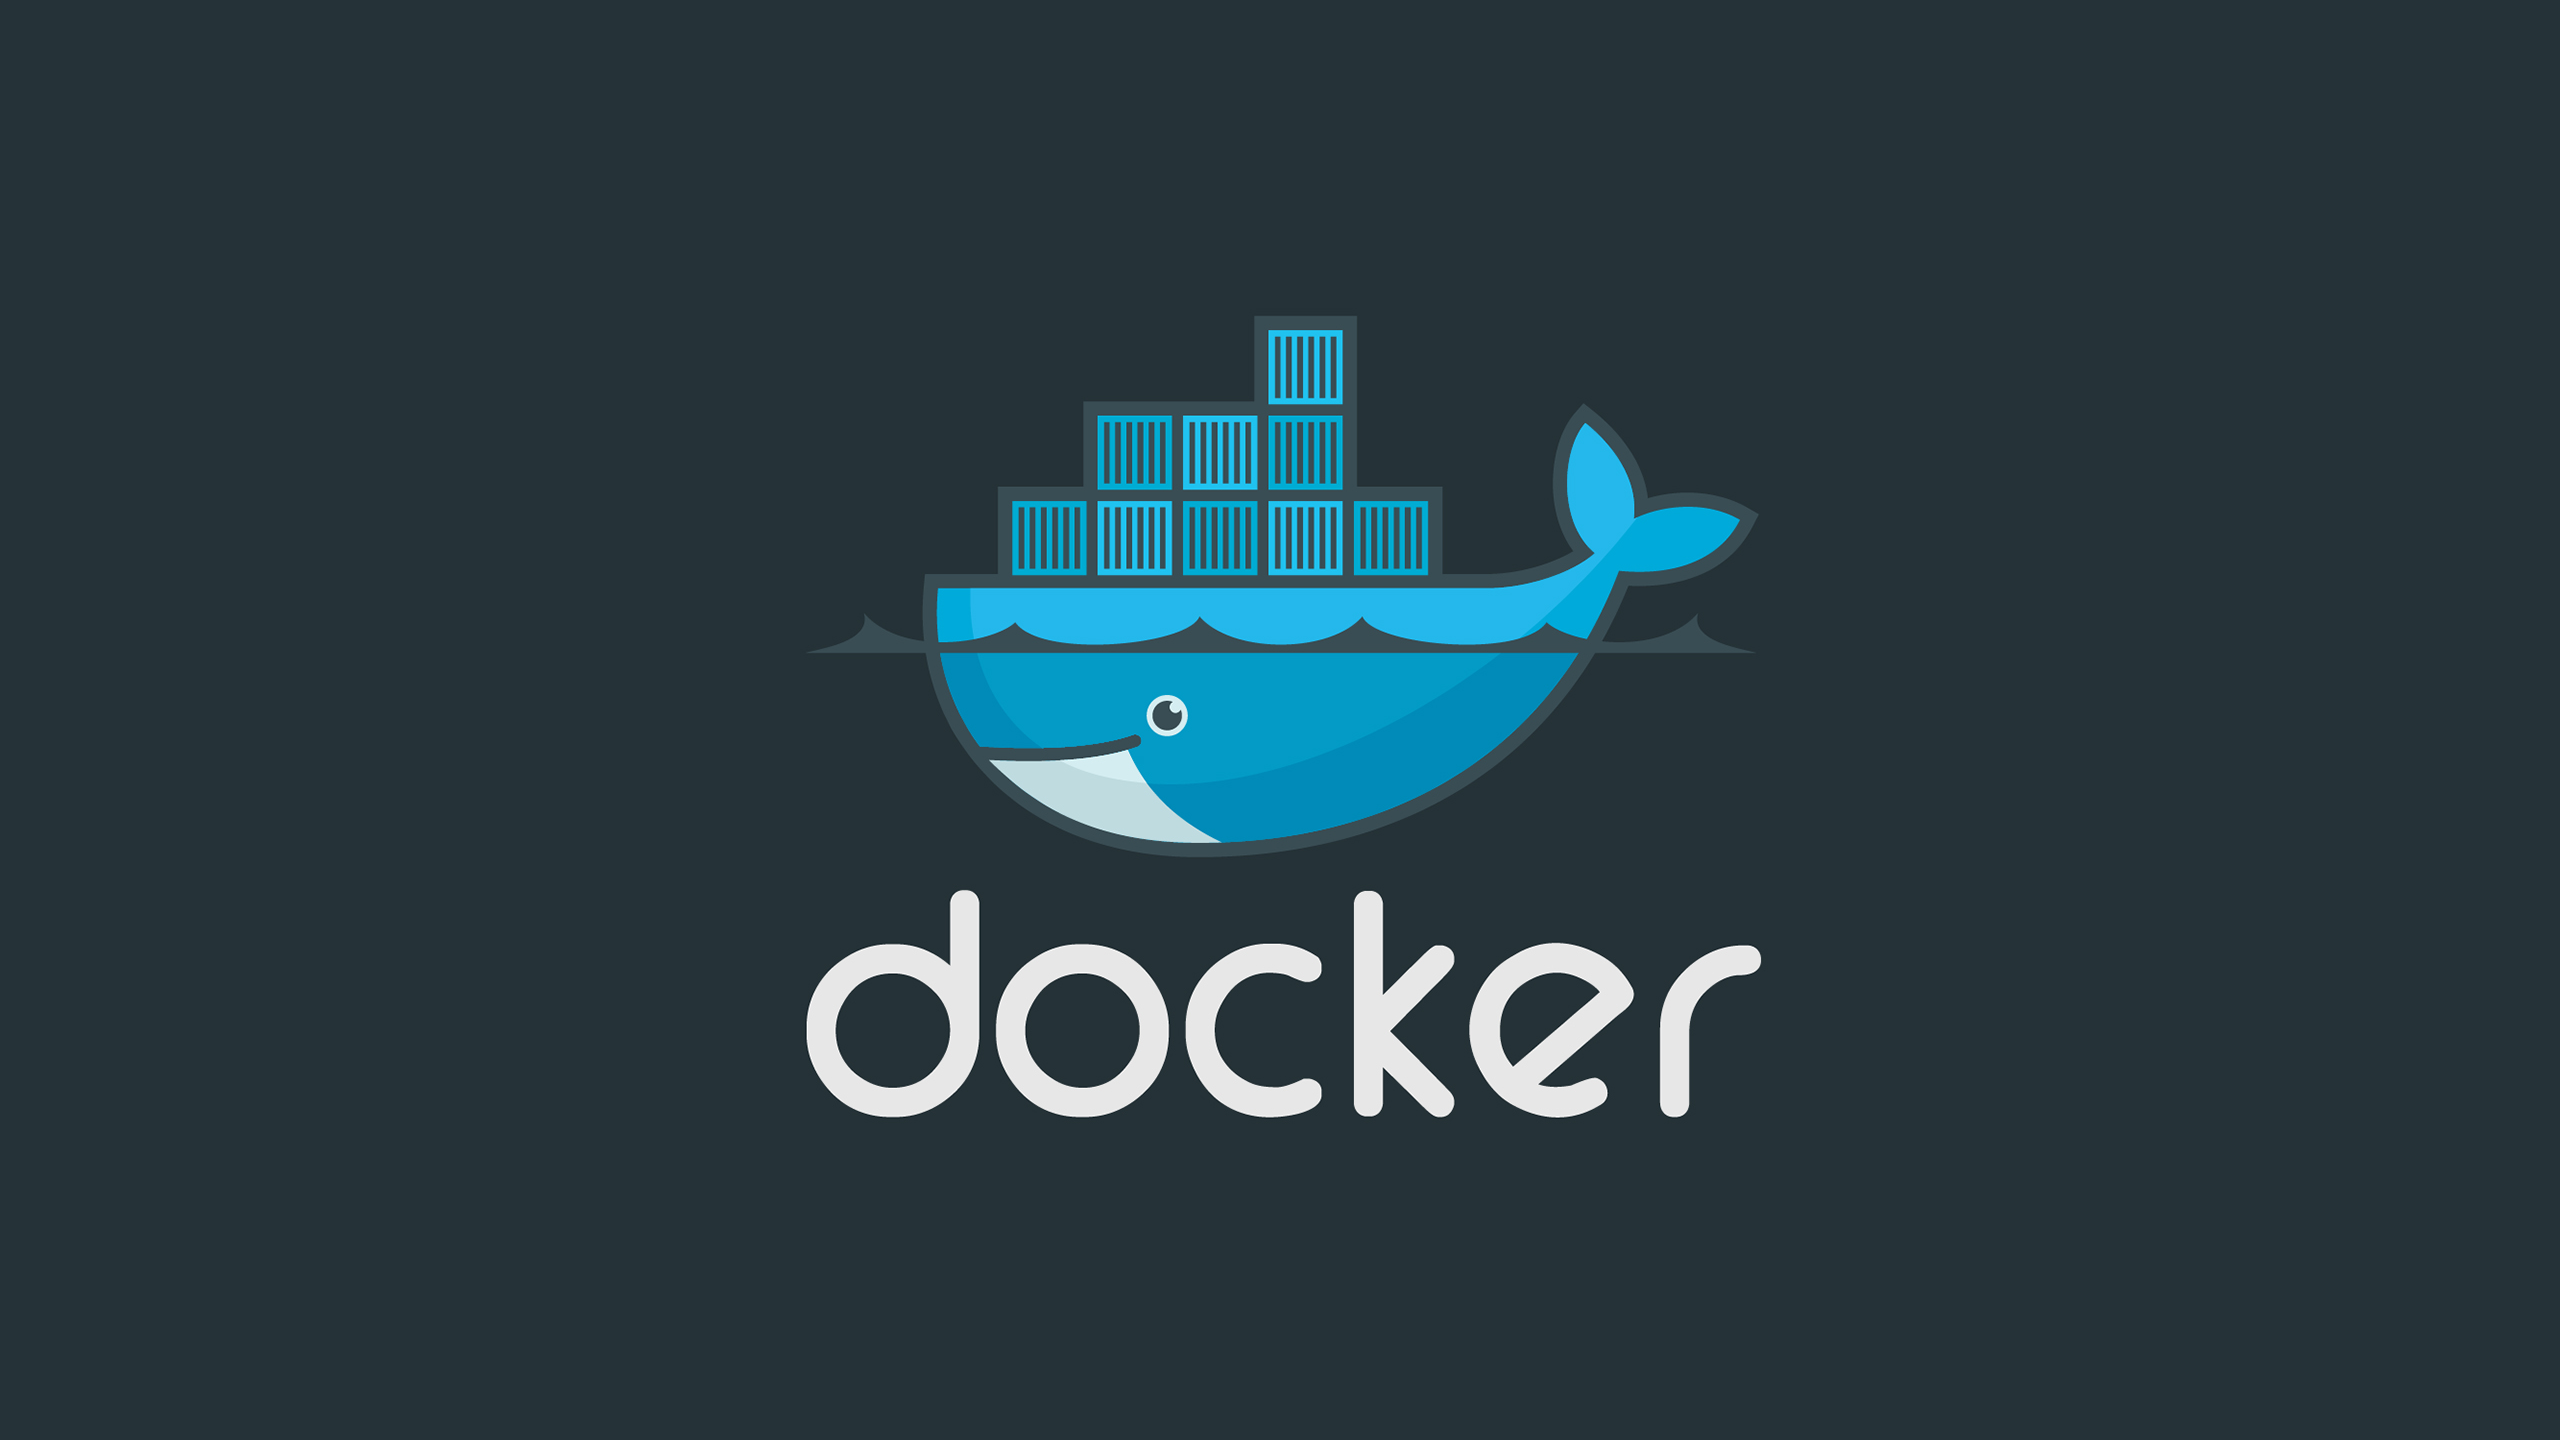 Docker management and usage, summarized!